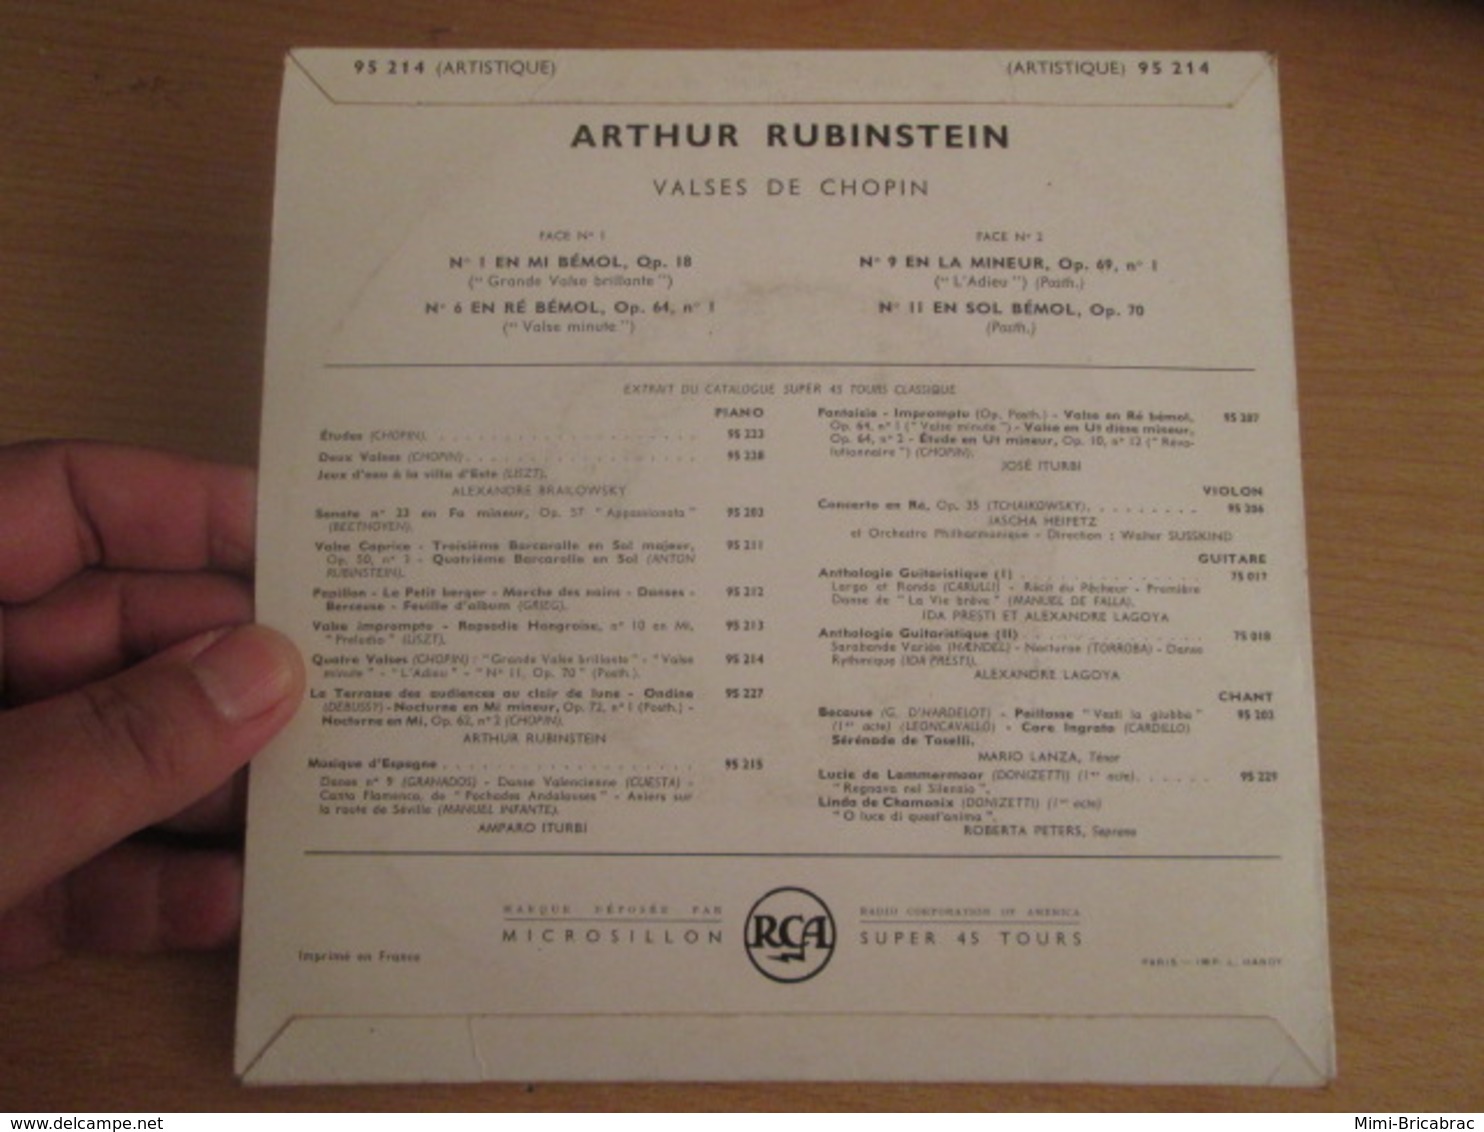 Vinyle 45T (7") RUBINSTEIN PLAYS CHOPIN 4 Valses Disque RCA 95 214 - Clásica